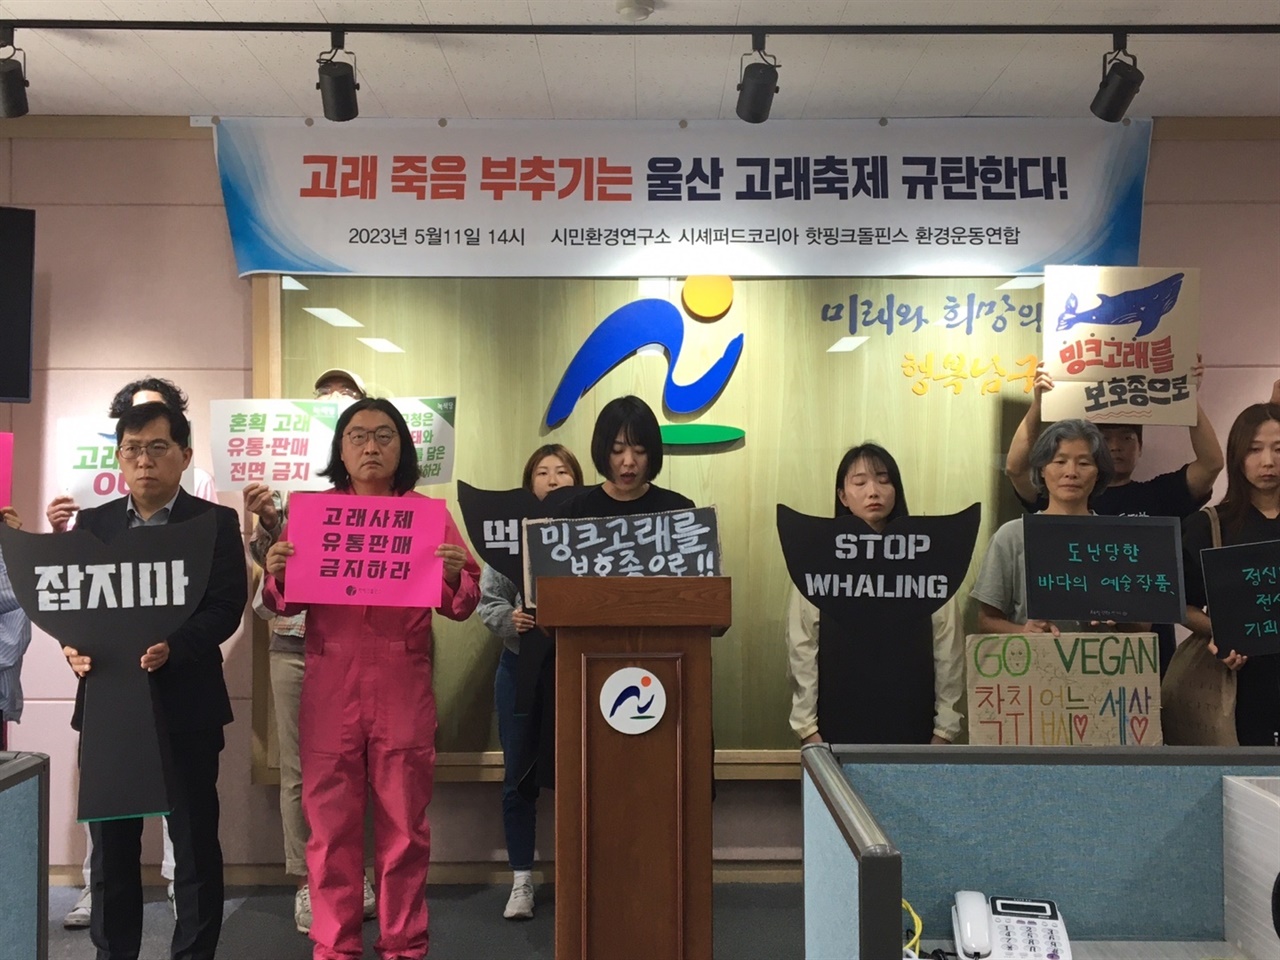 7개 환경단체들의 울산 고래축제 규탄 시민회견. 시셰퍼드 코리아 활동가가 발언하고 있다